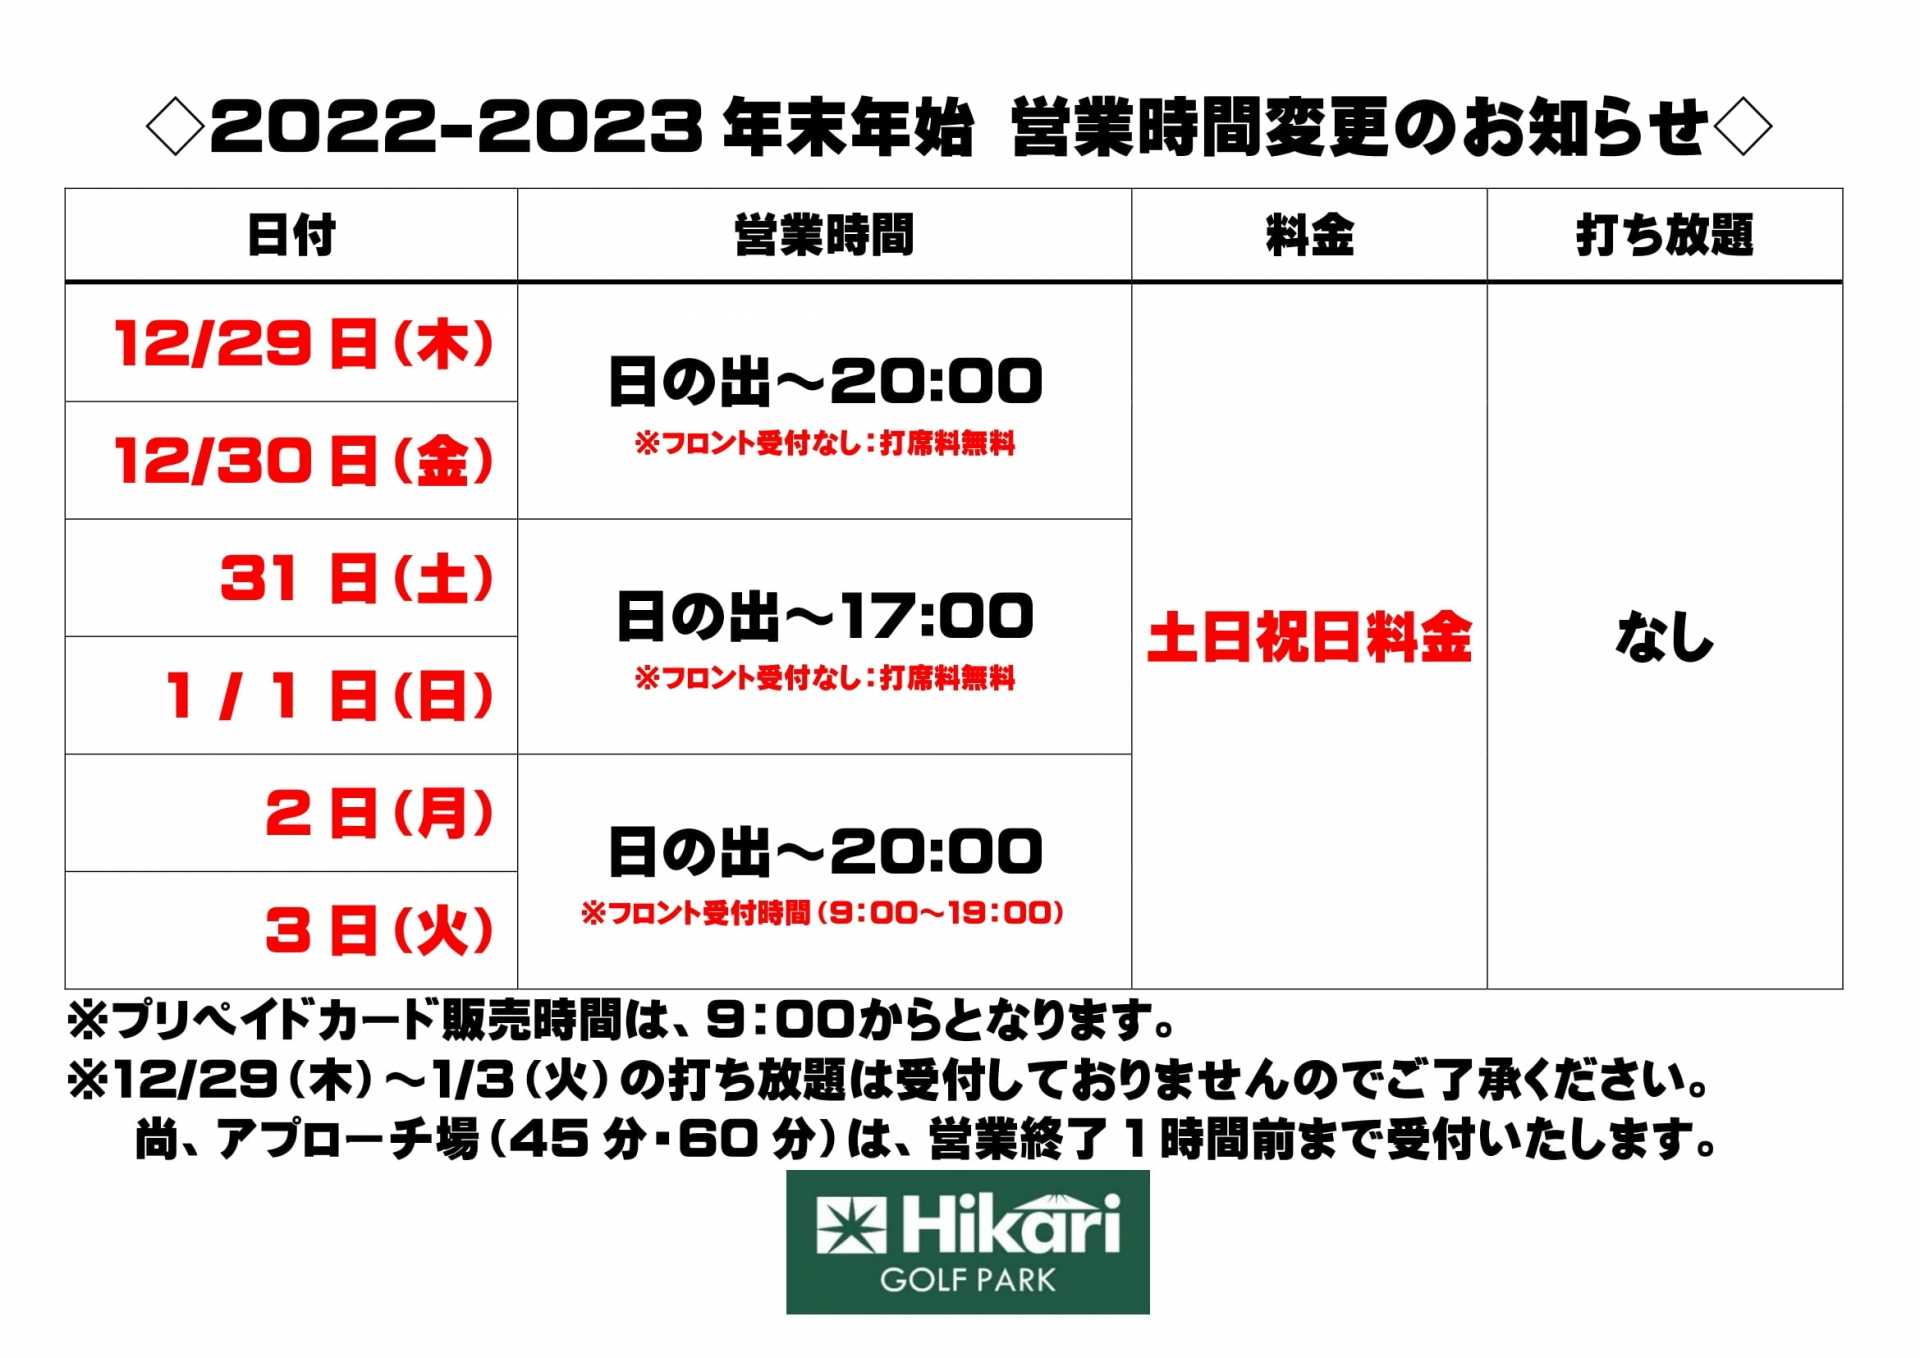 2022-2023 年末年始営業時間変更のお知らせ